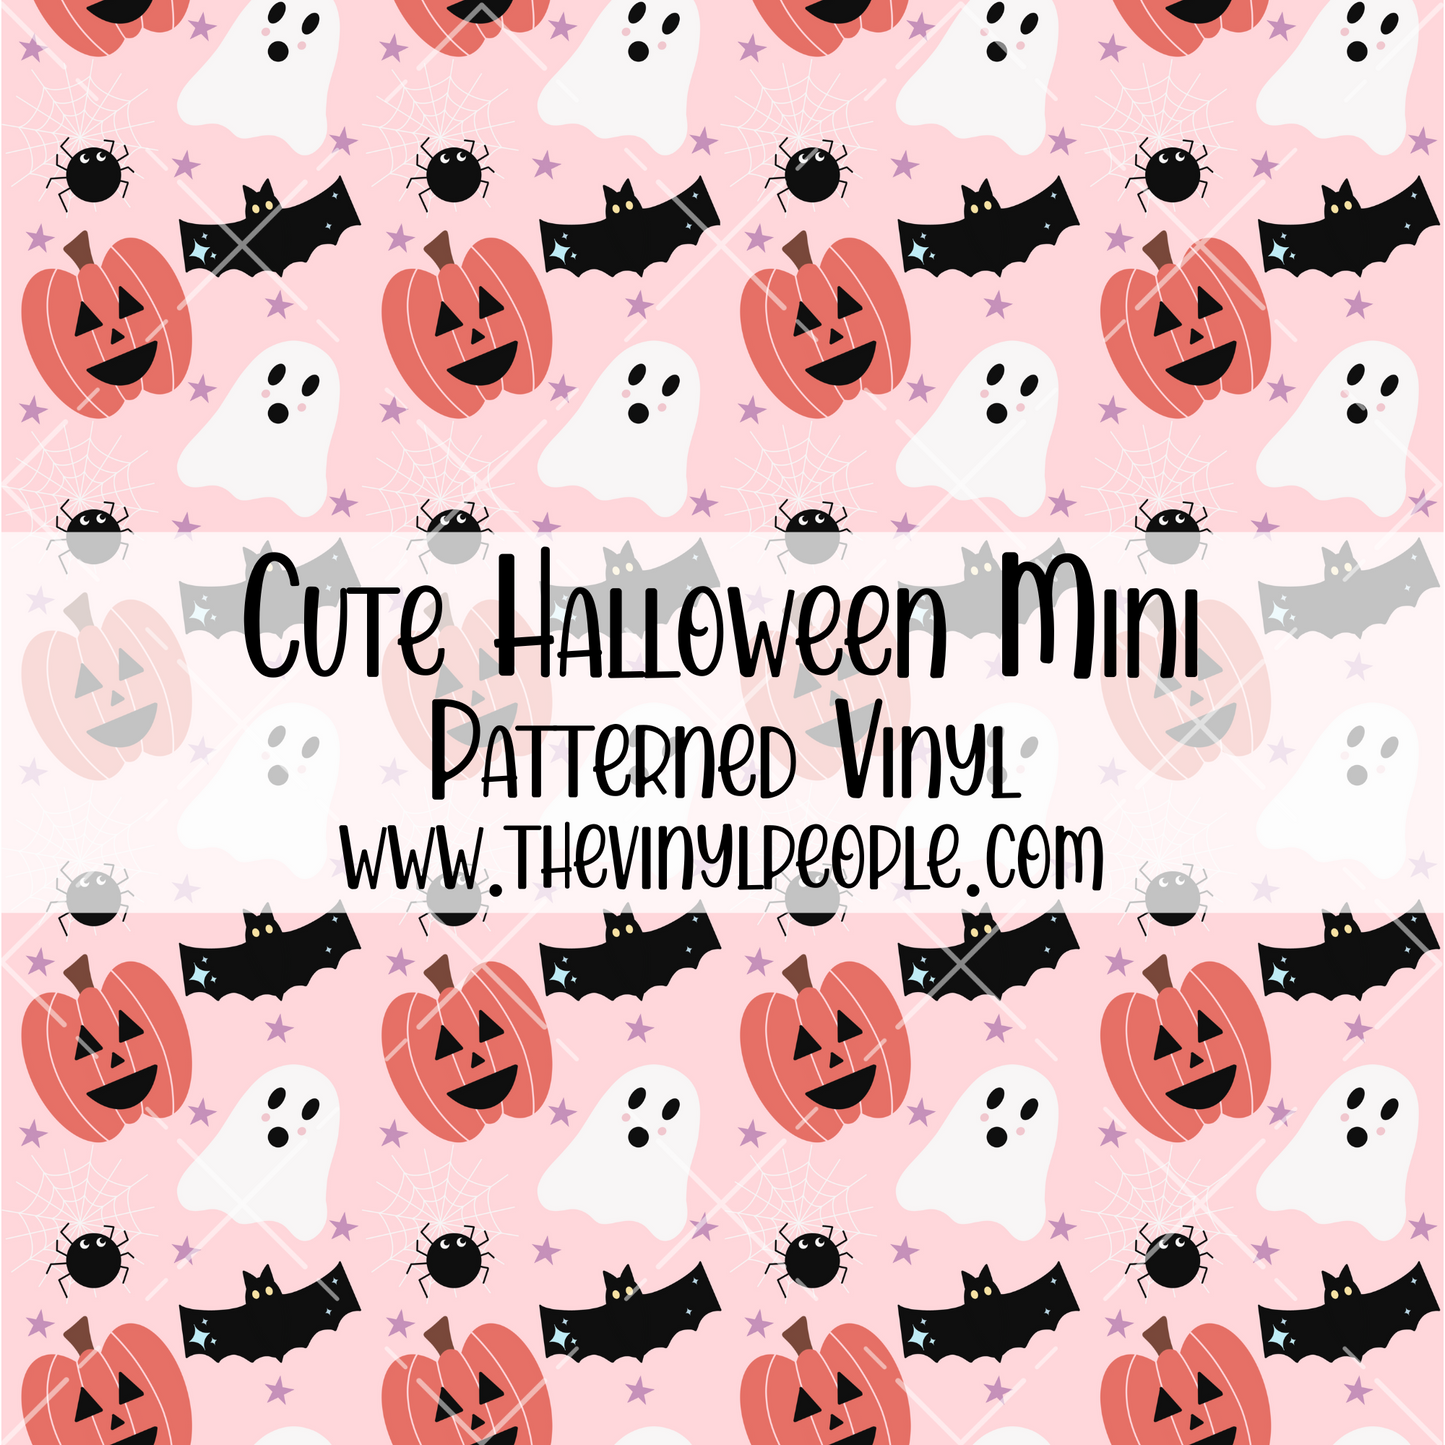 Cute Halloween Patterned Vinyl